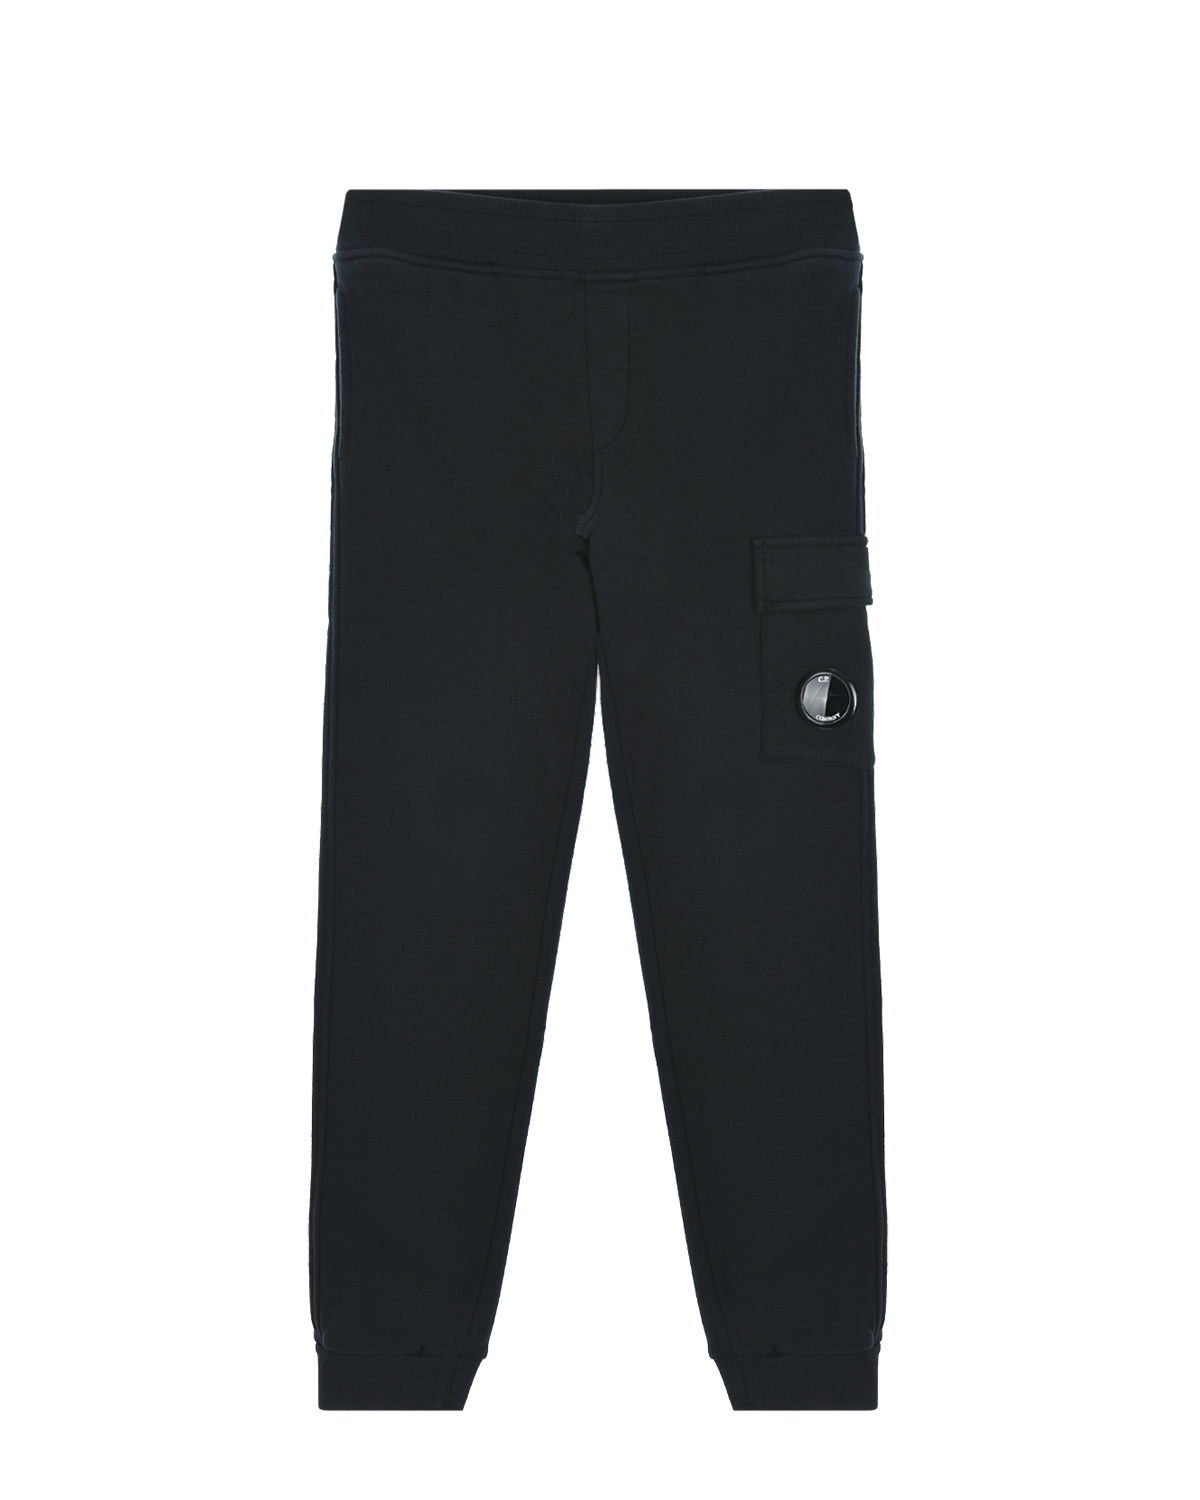 Черные спортивные брюки CP Company детские, размер 164, цвет черный - фото 1